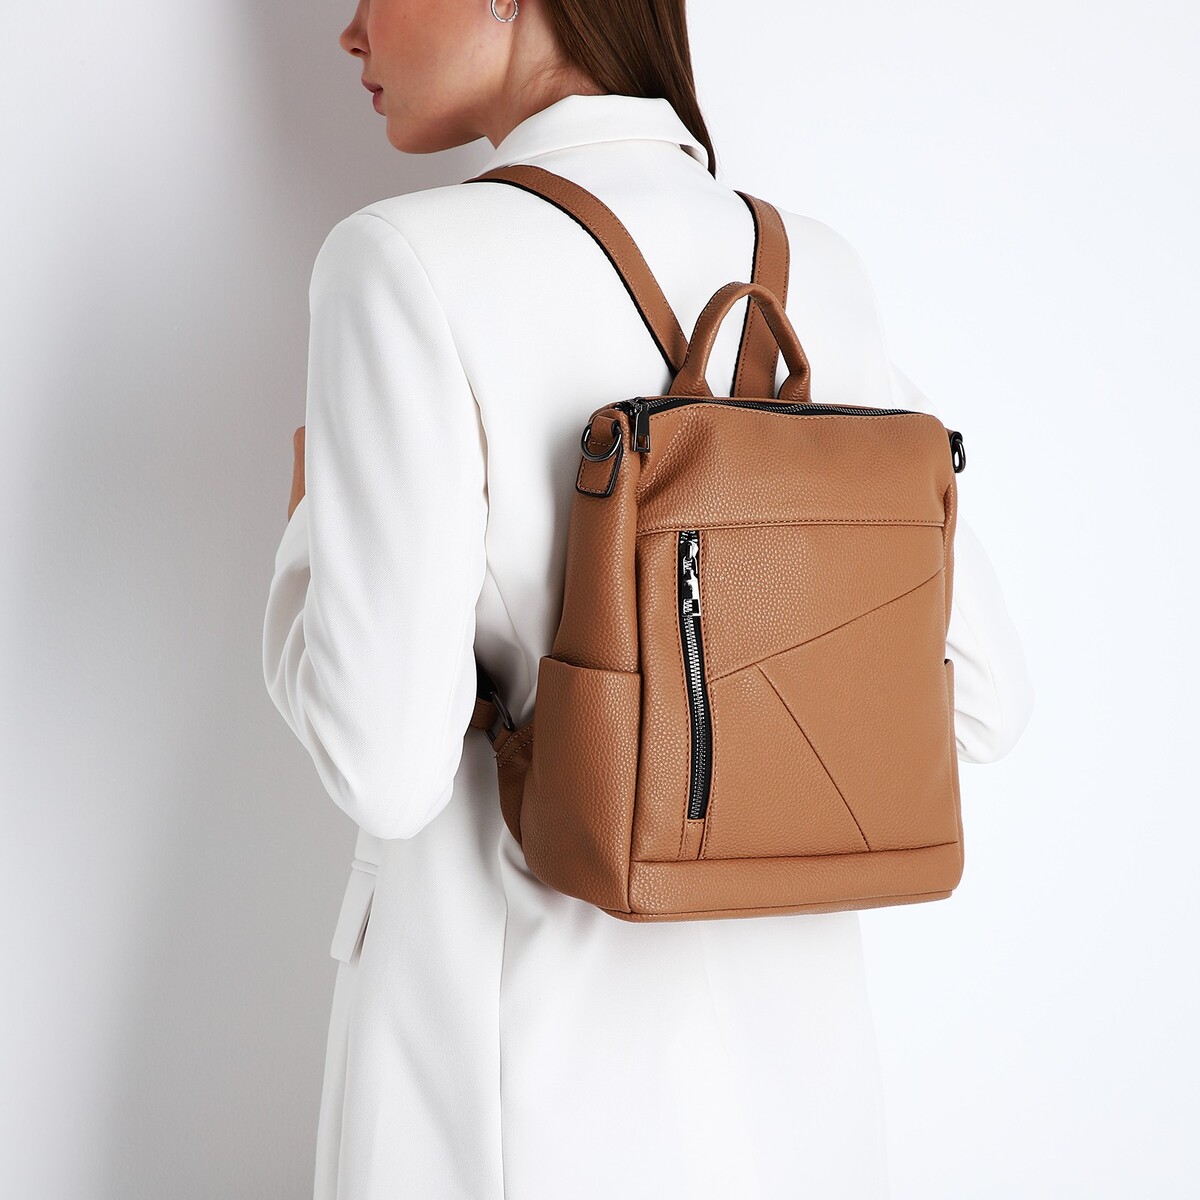 Рюкзак женский из искусственной кожи на молнии, 4 кармана, цвет коричневый рюкзак nuovita capcap via marrone коричневый